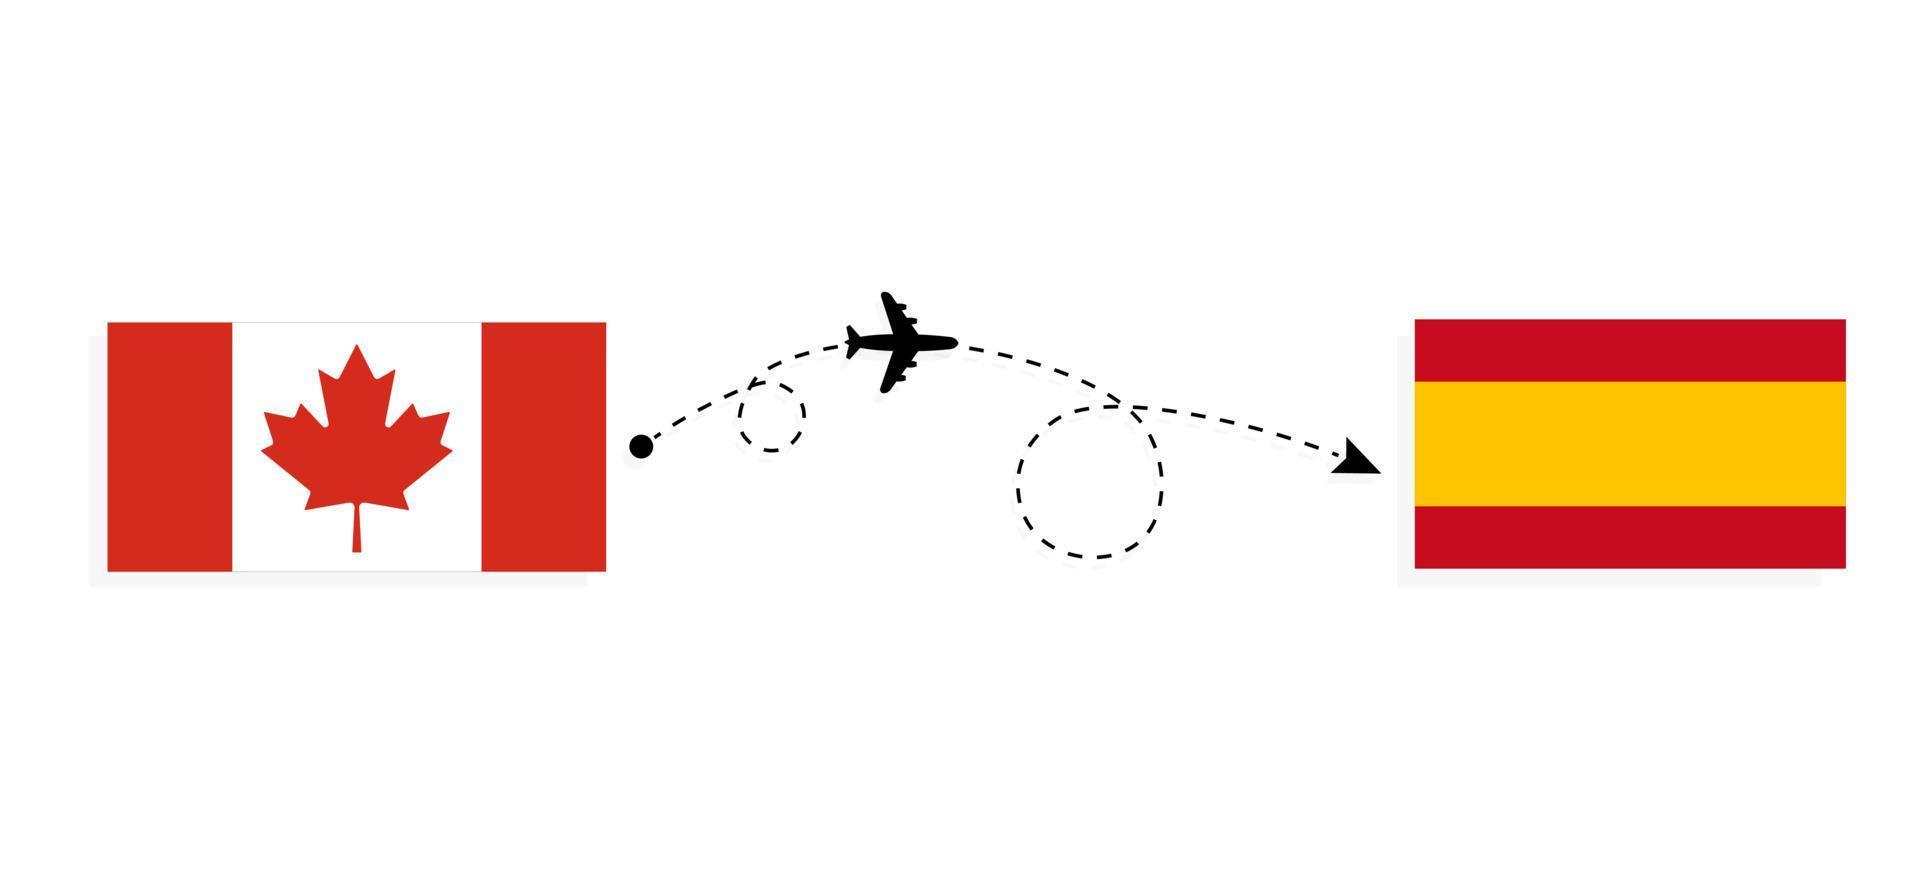 flyg och resor från Kanada till Spanien med passagerarflygplan vektor